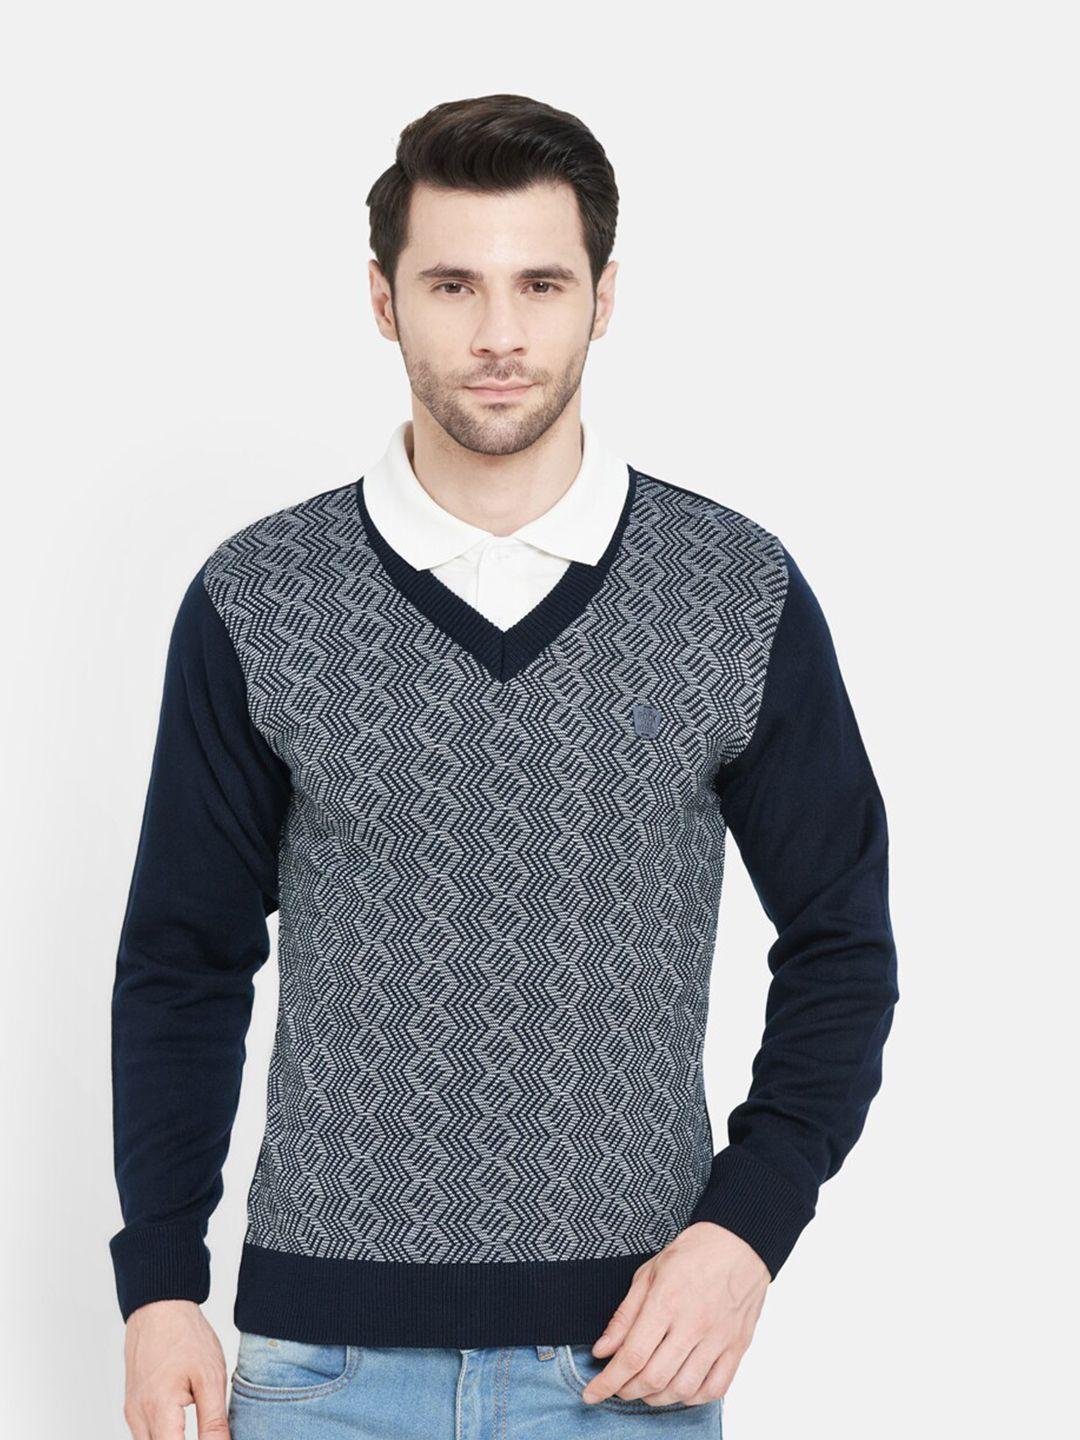 duke men navy blue self design wool pullover sweater